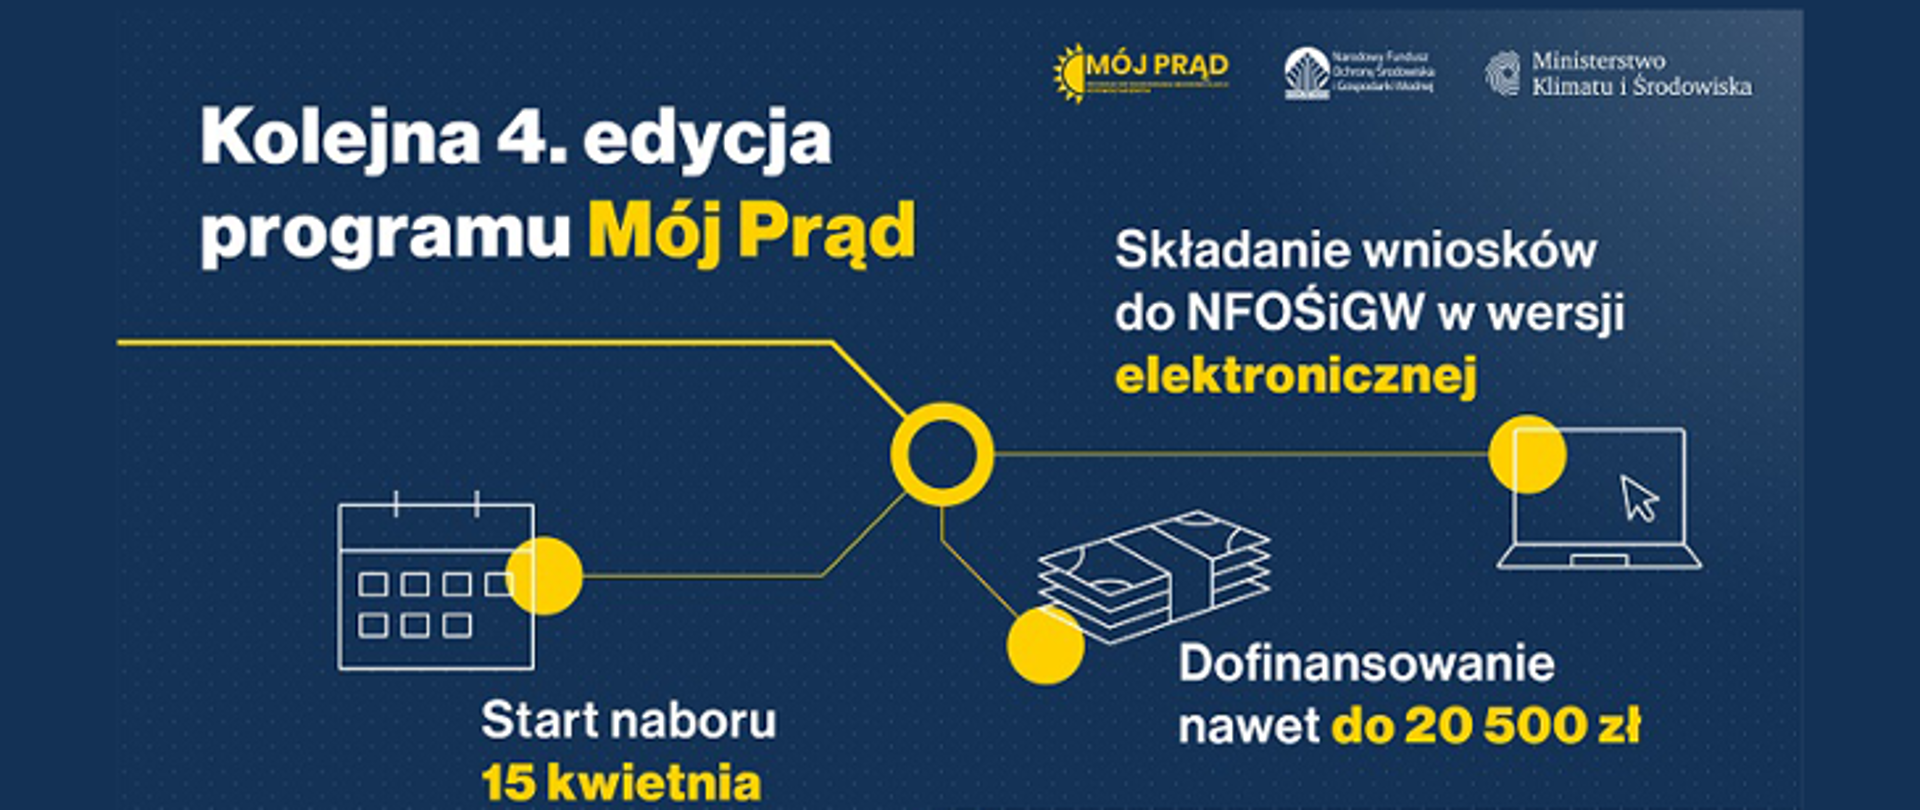 Rusza czwarta edycja programu Mój Prąd i nowy system rozliczeń dla prosumentów. To kolejny krok w kierunku rozwoju sektora fotowoltaiki